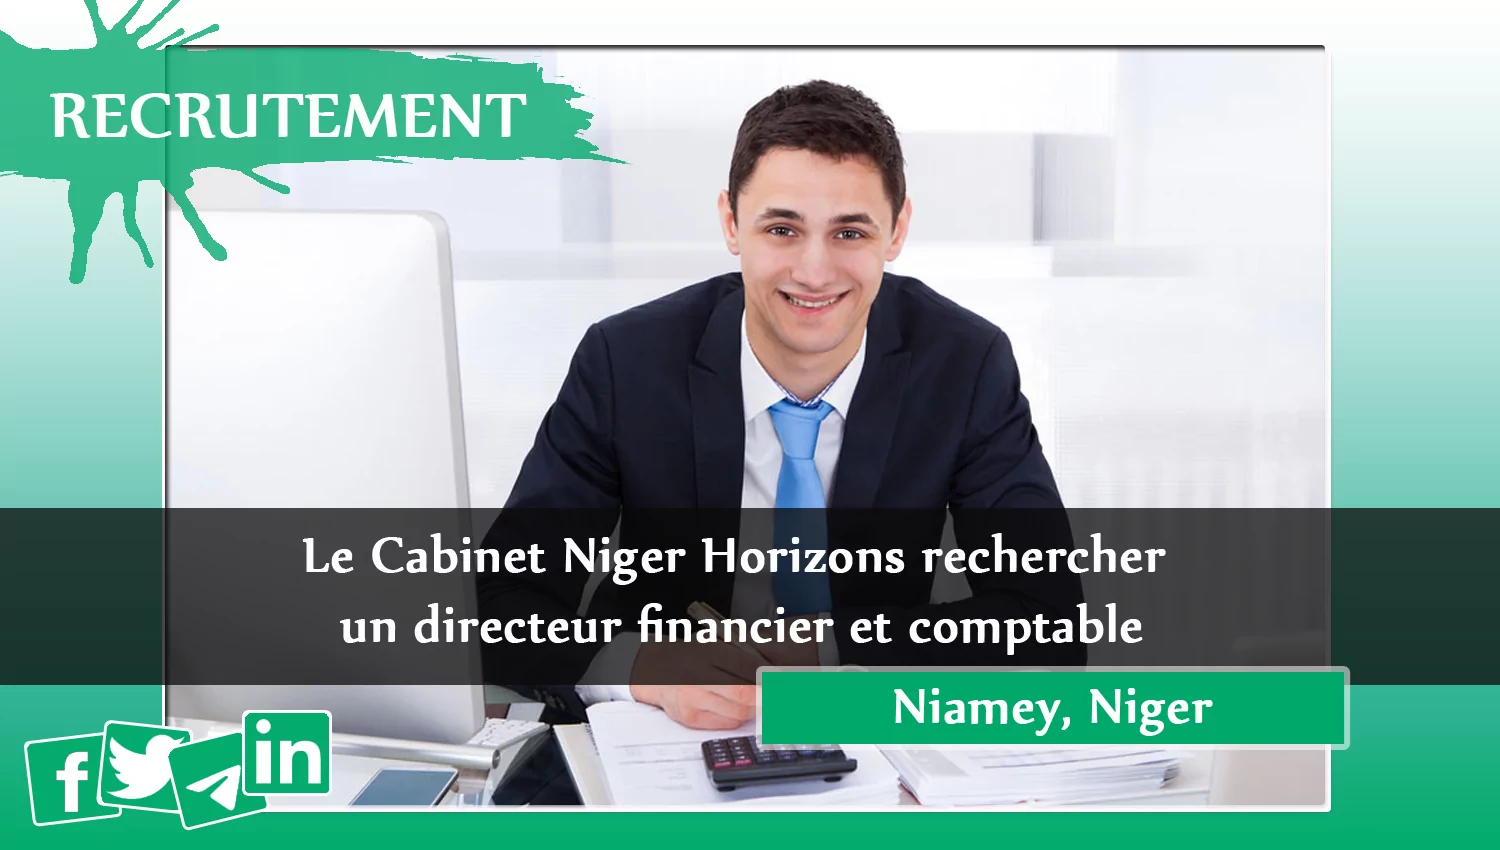 Le Cabinet Niger Horizons rechercher un directeur financier et comptable, Niamey, Niger